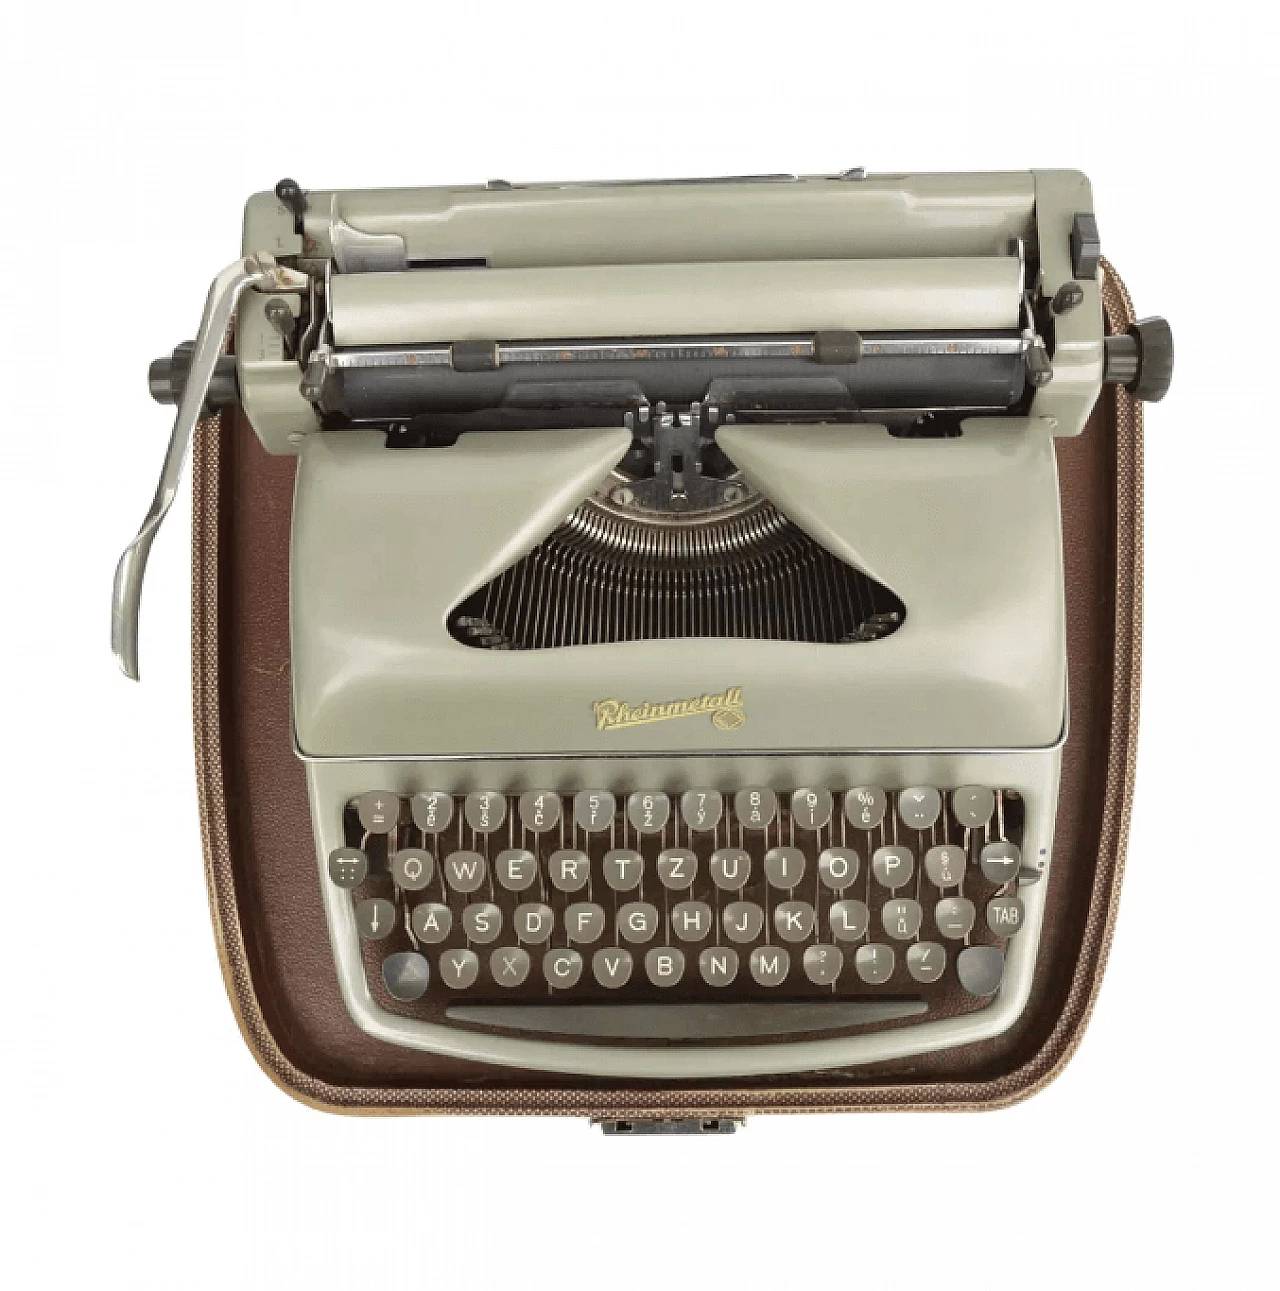 Rheinmetall typewriter model KsT, 1950s 7